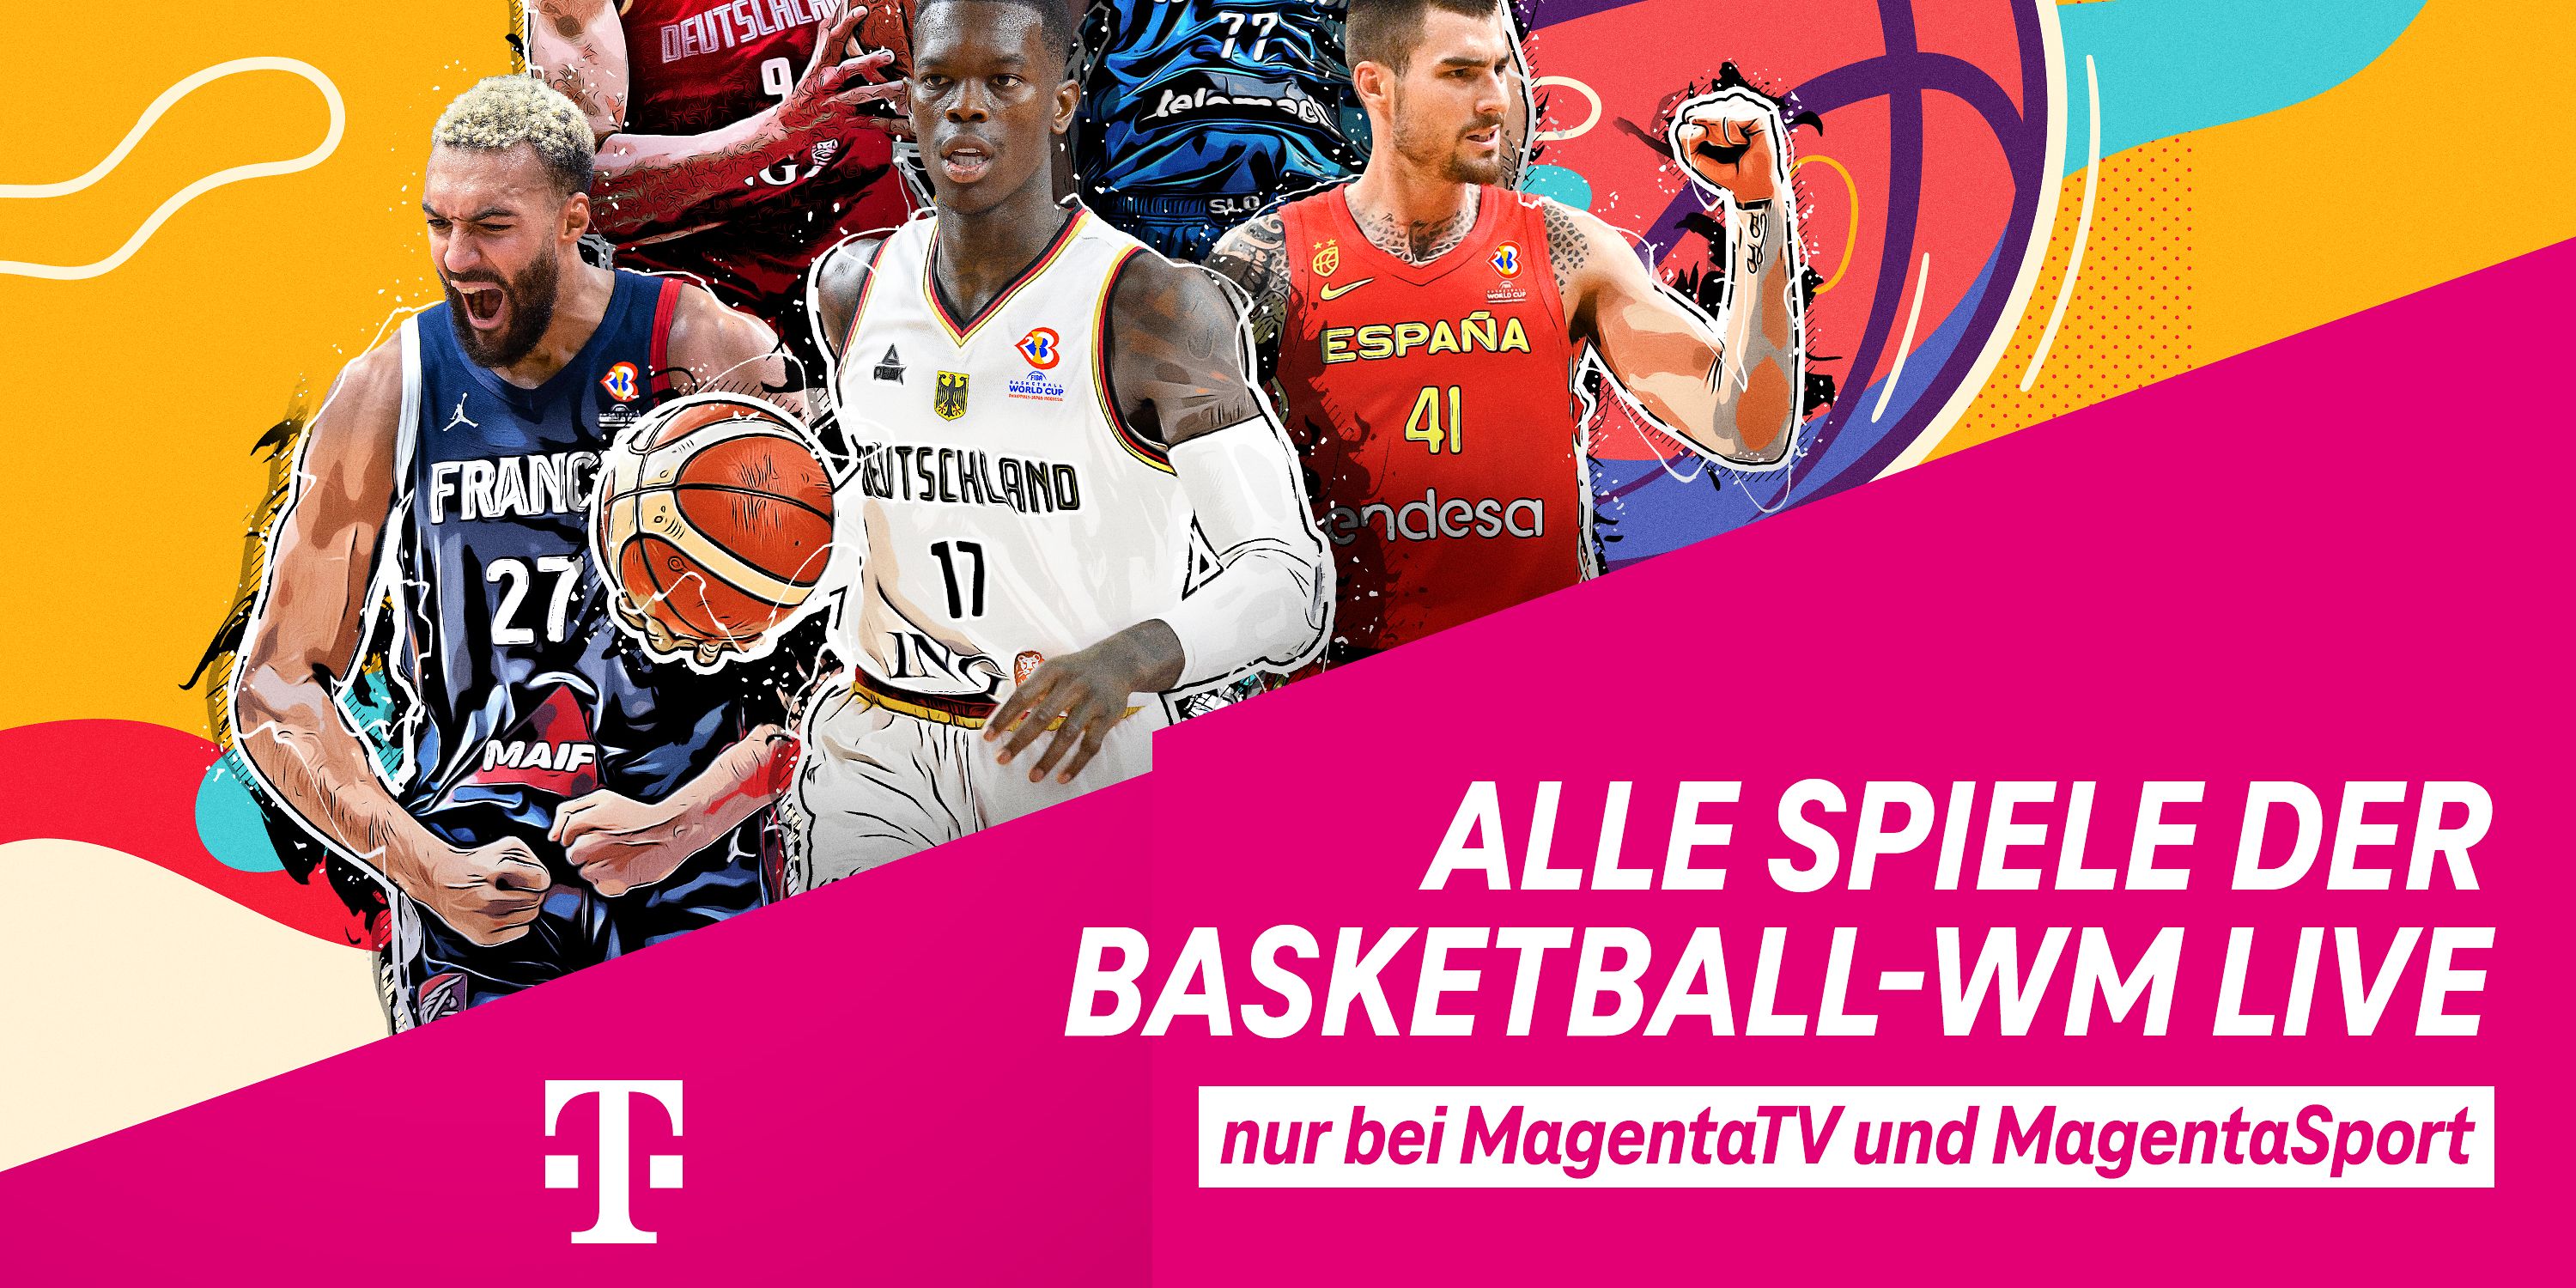 Großes Saisonfinale Basketball-WM und Vorbereitungsspiele bei MagentaSport Deutsche Telekom